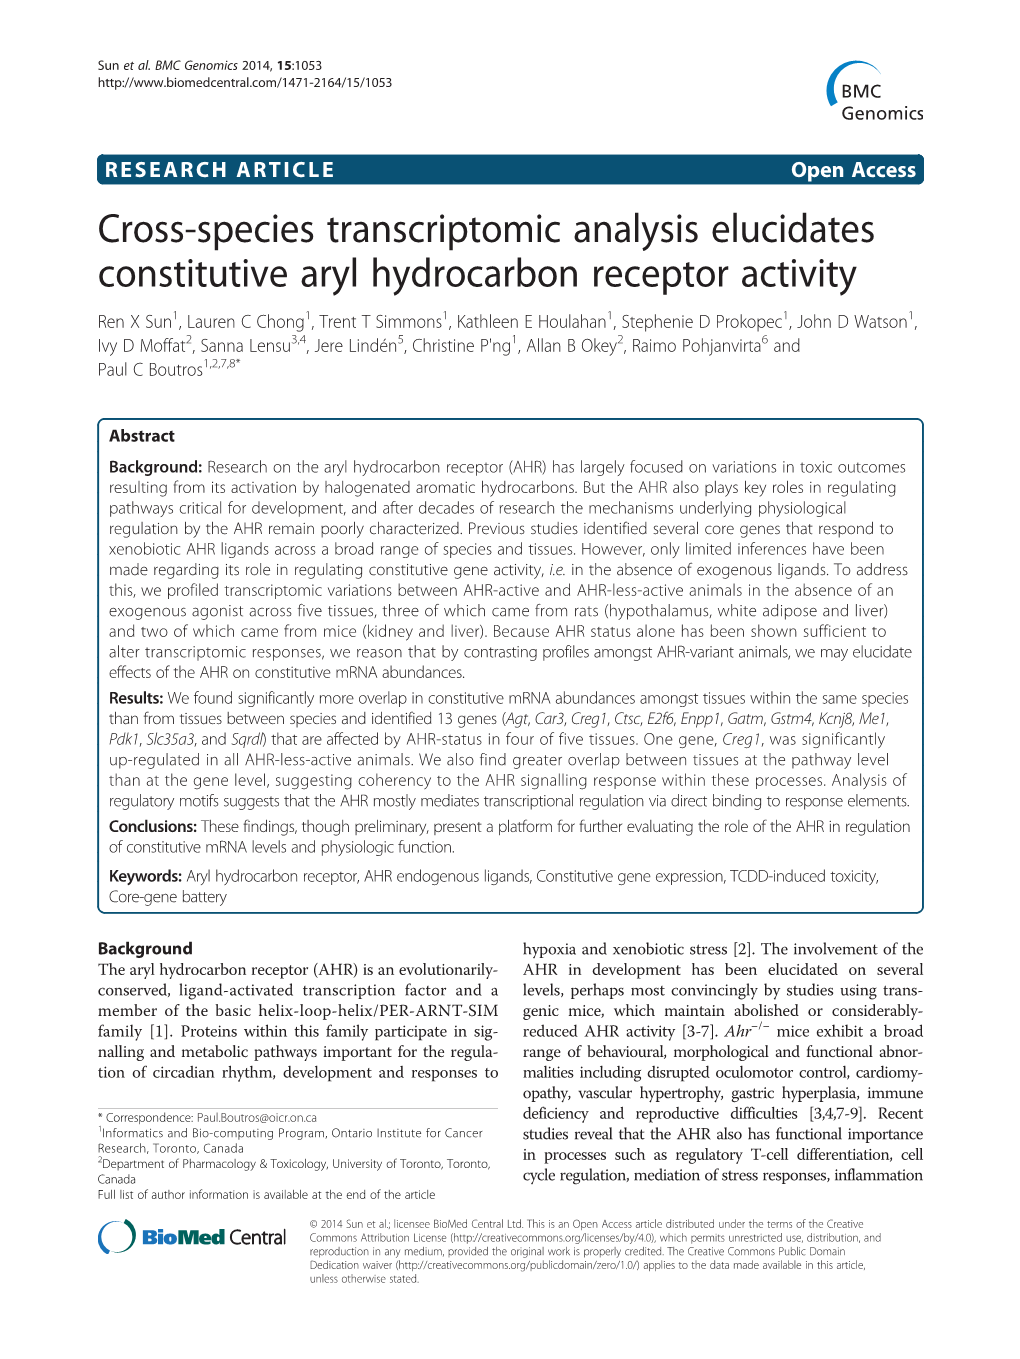 Cross-Species Transcriptomic Analysis Elucidates Constitutive Aryl